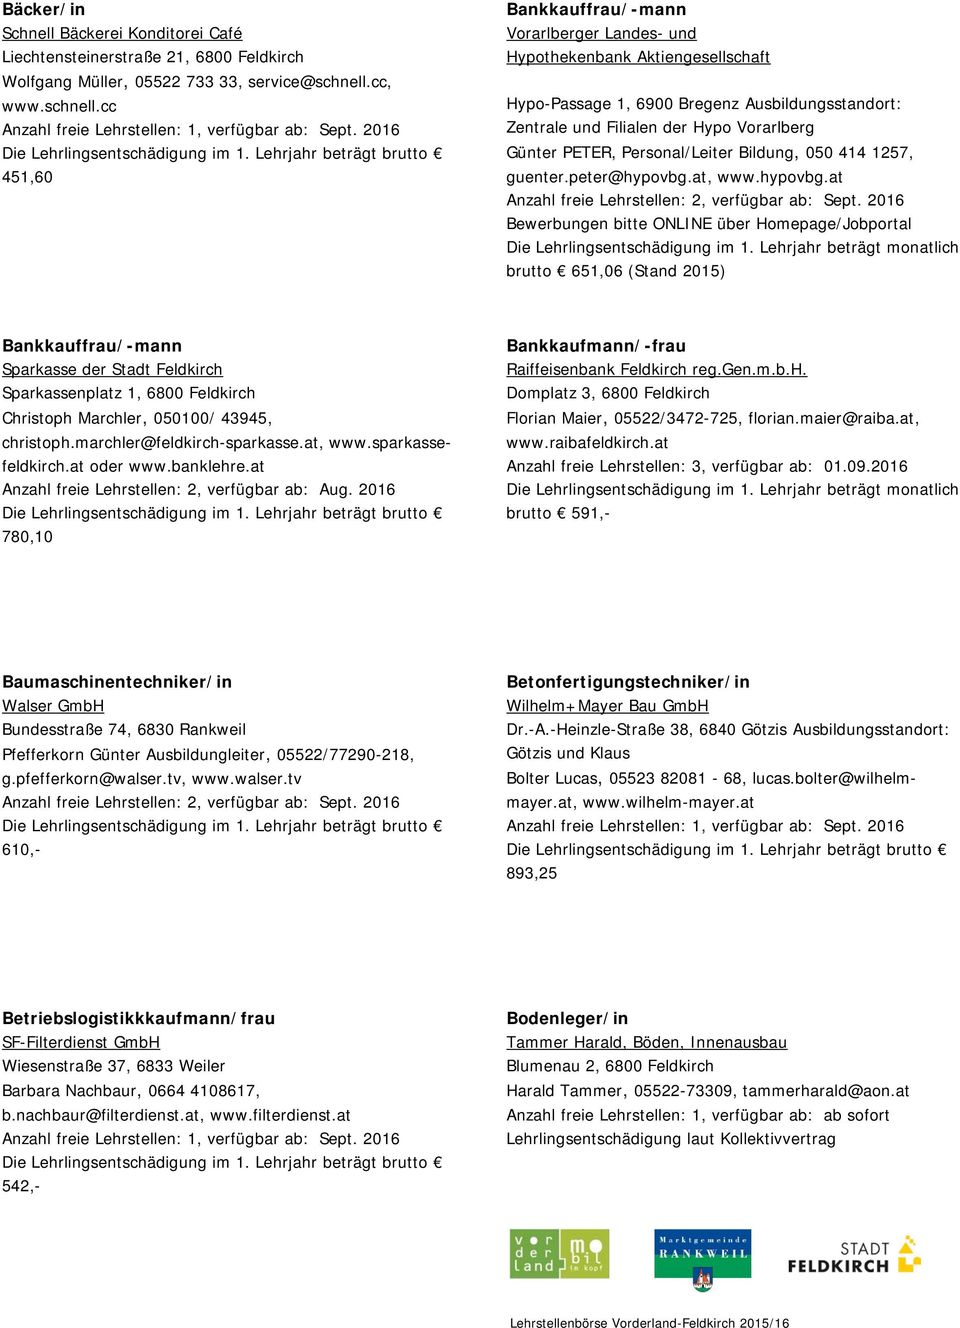 cc 451,60 Bankkauffrau/-mann Vorarlberger Landes- und Hypothekenbank Aktiengesellschaft Hypo-Passage 1, 6900 Bregenz Ausbildungsstandort: Zentrale und Filialen der Hypo Vorarlberg Günter PETER,